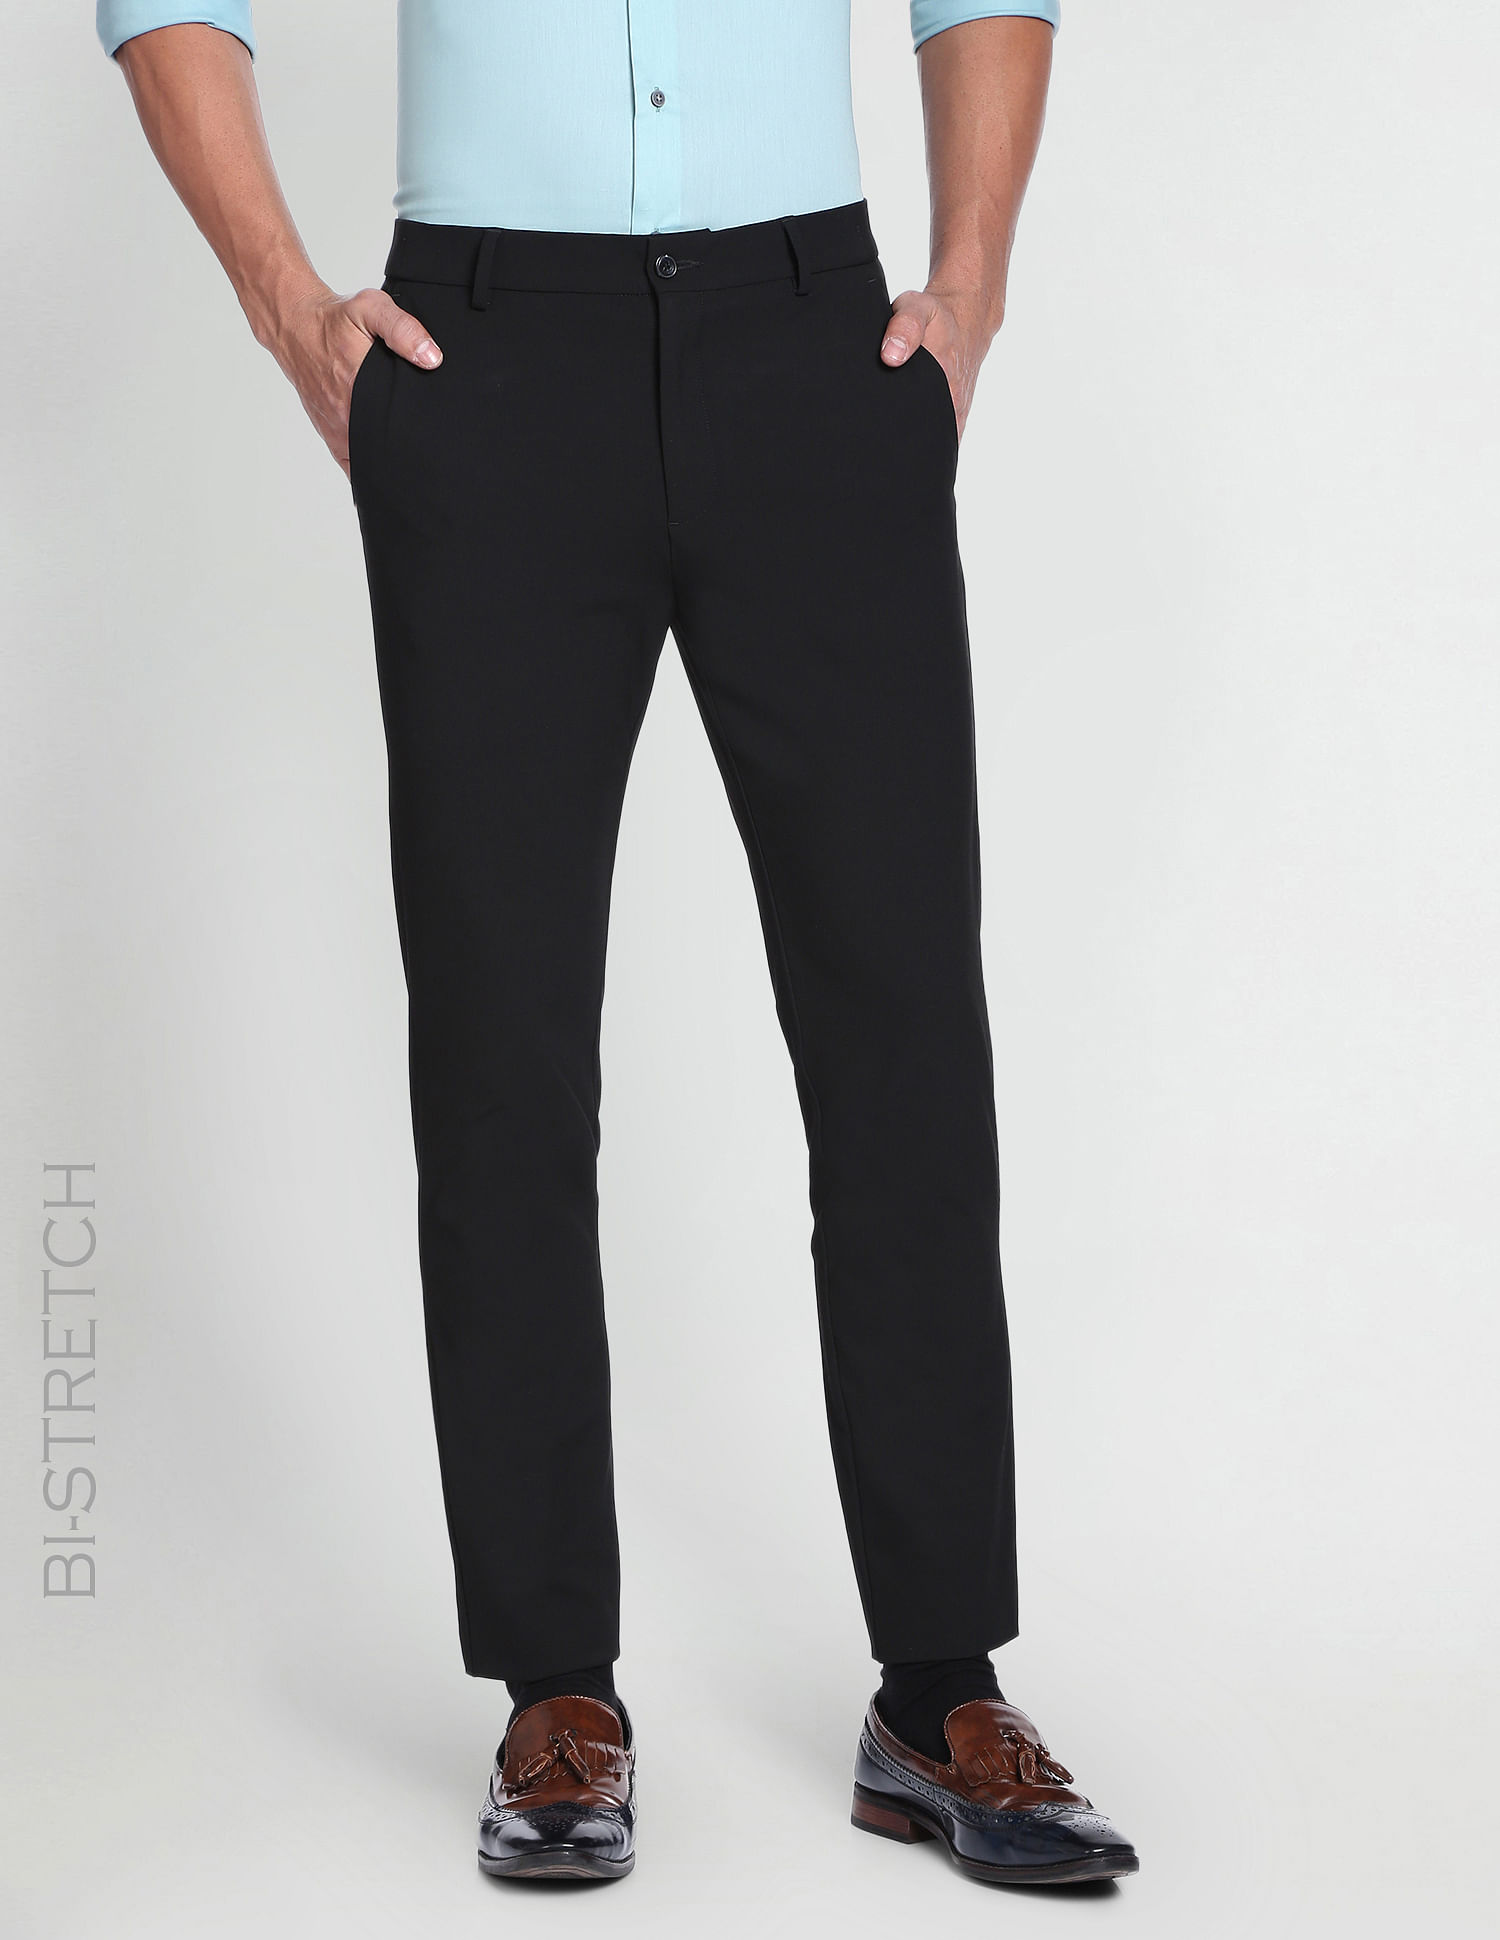 Buy Black Trousers & Pants for Men by LP Online | Ajio.com